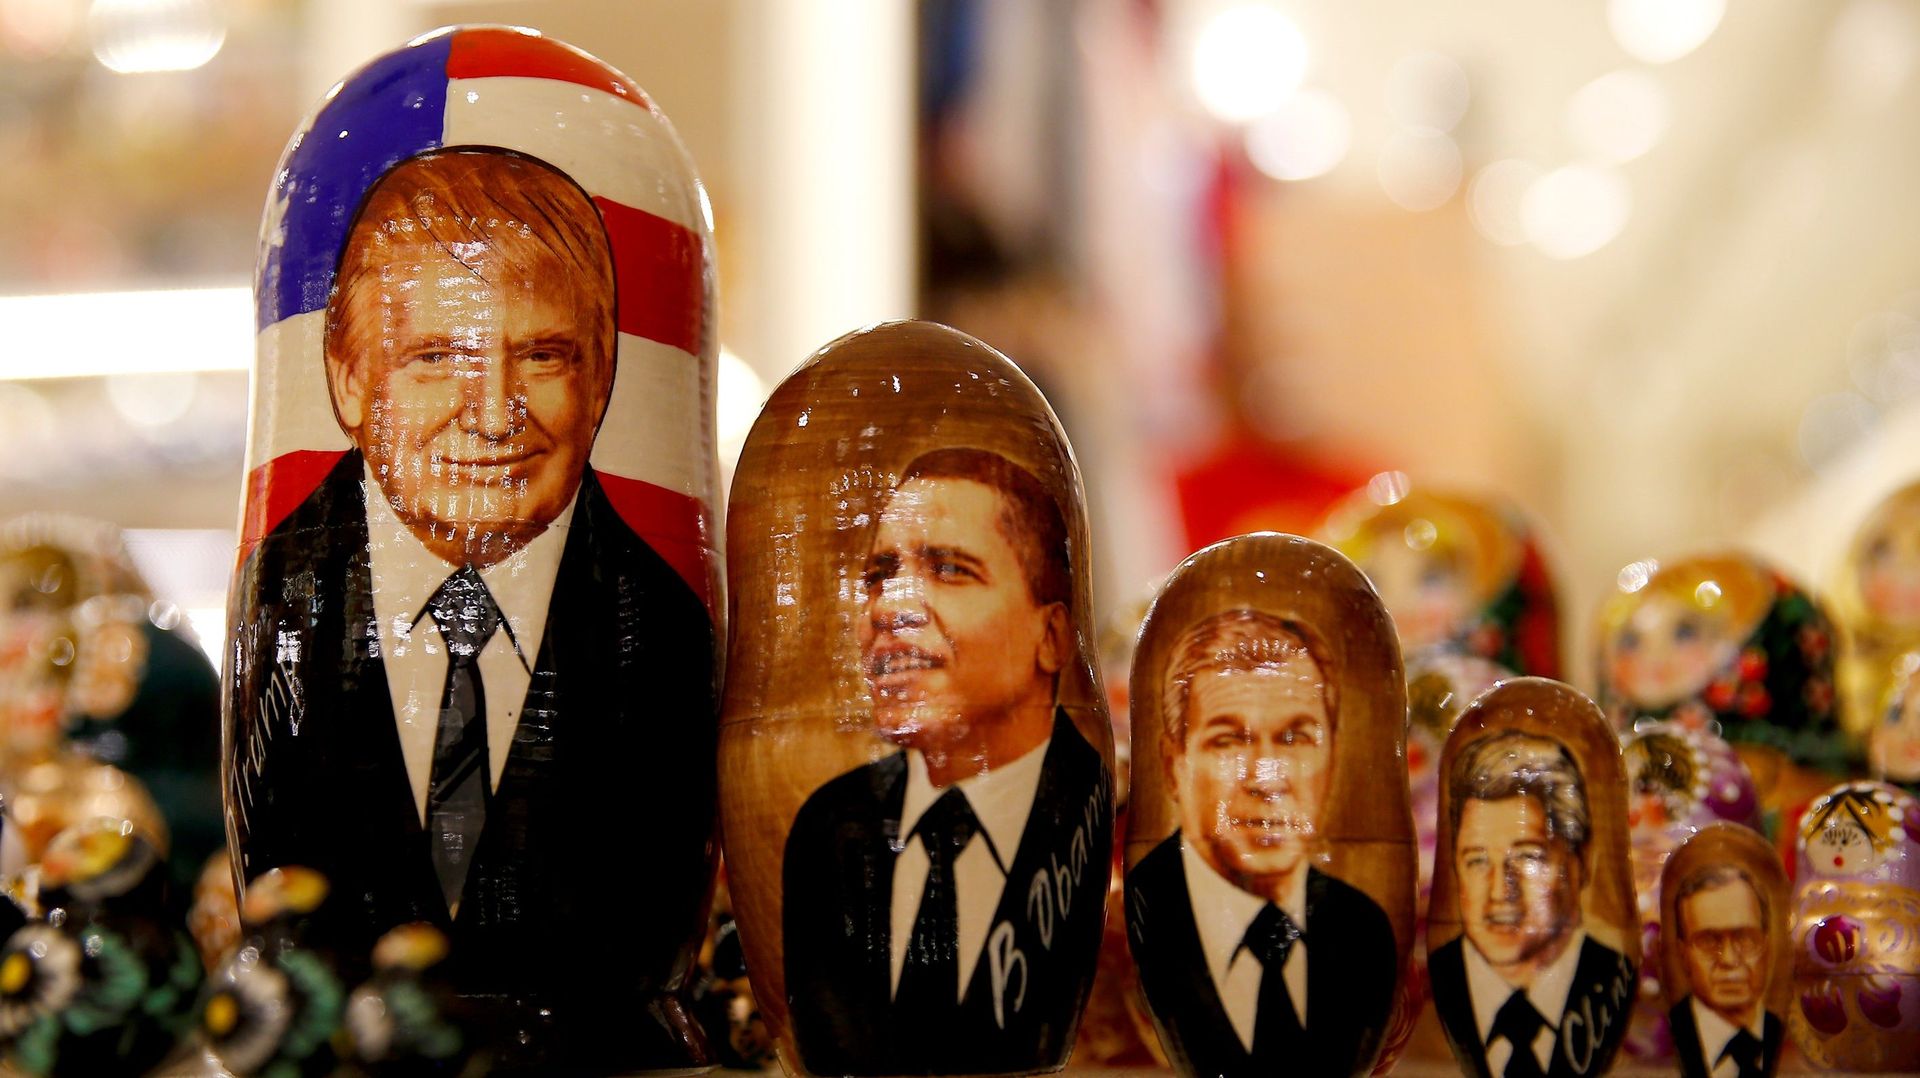 Les cinq présidents ayant précédé Joe Biden dans un magasin de souvenirs moscovite en 2016 (illustration)